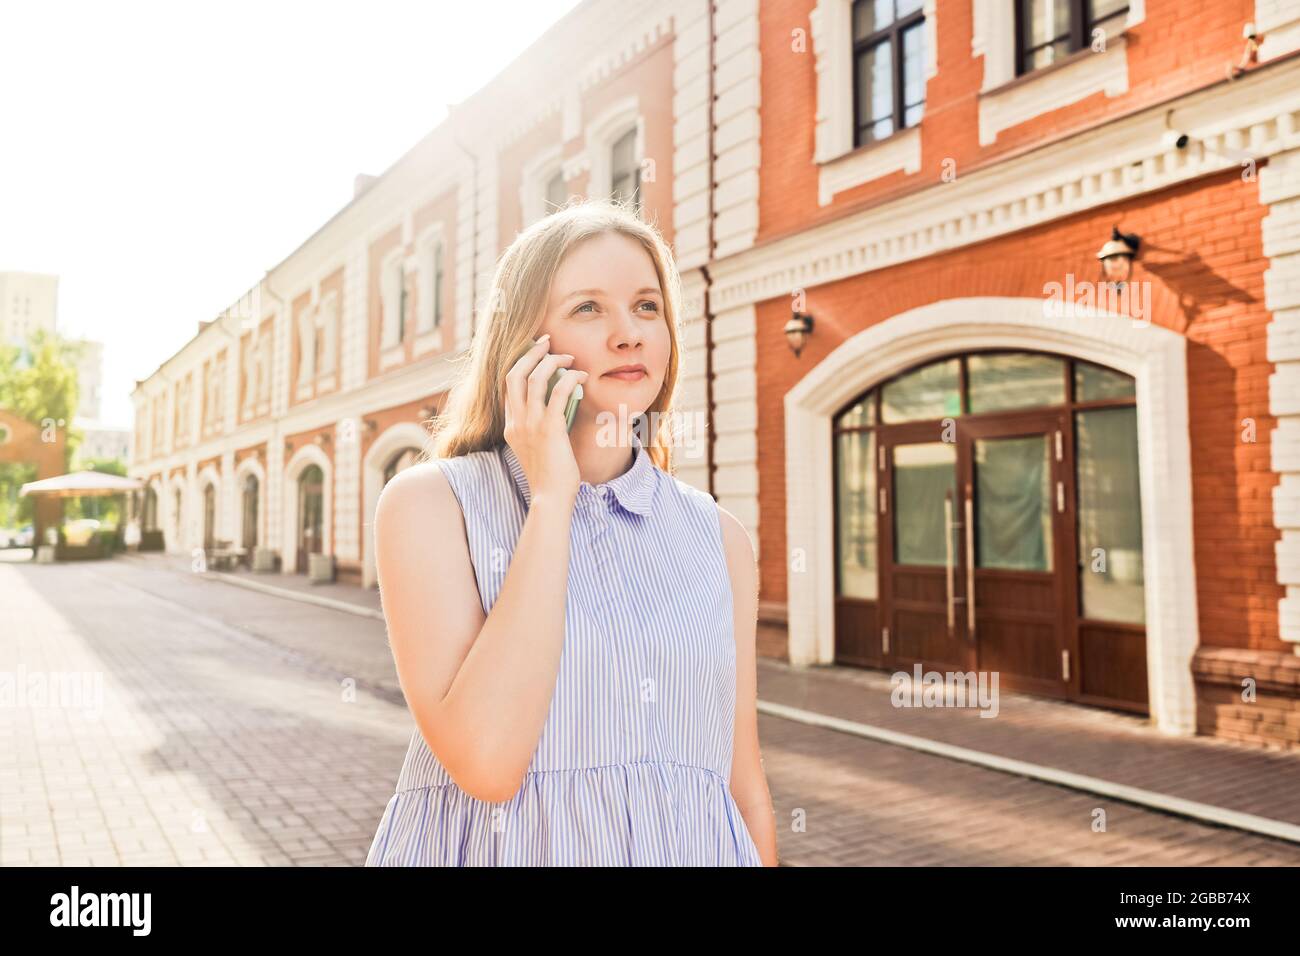 Gros plan d'une belle jeune femme souriante parlant sur un téléphone mobile à l'extérieur. Rue en arrière-plan, jour d'été. Banque D'Images